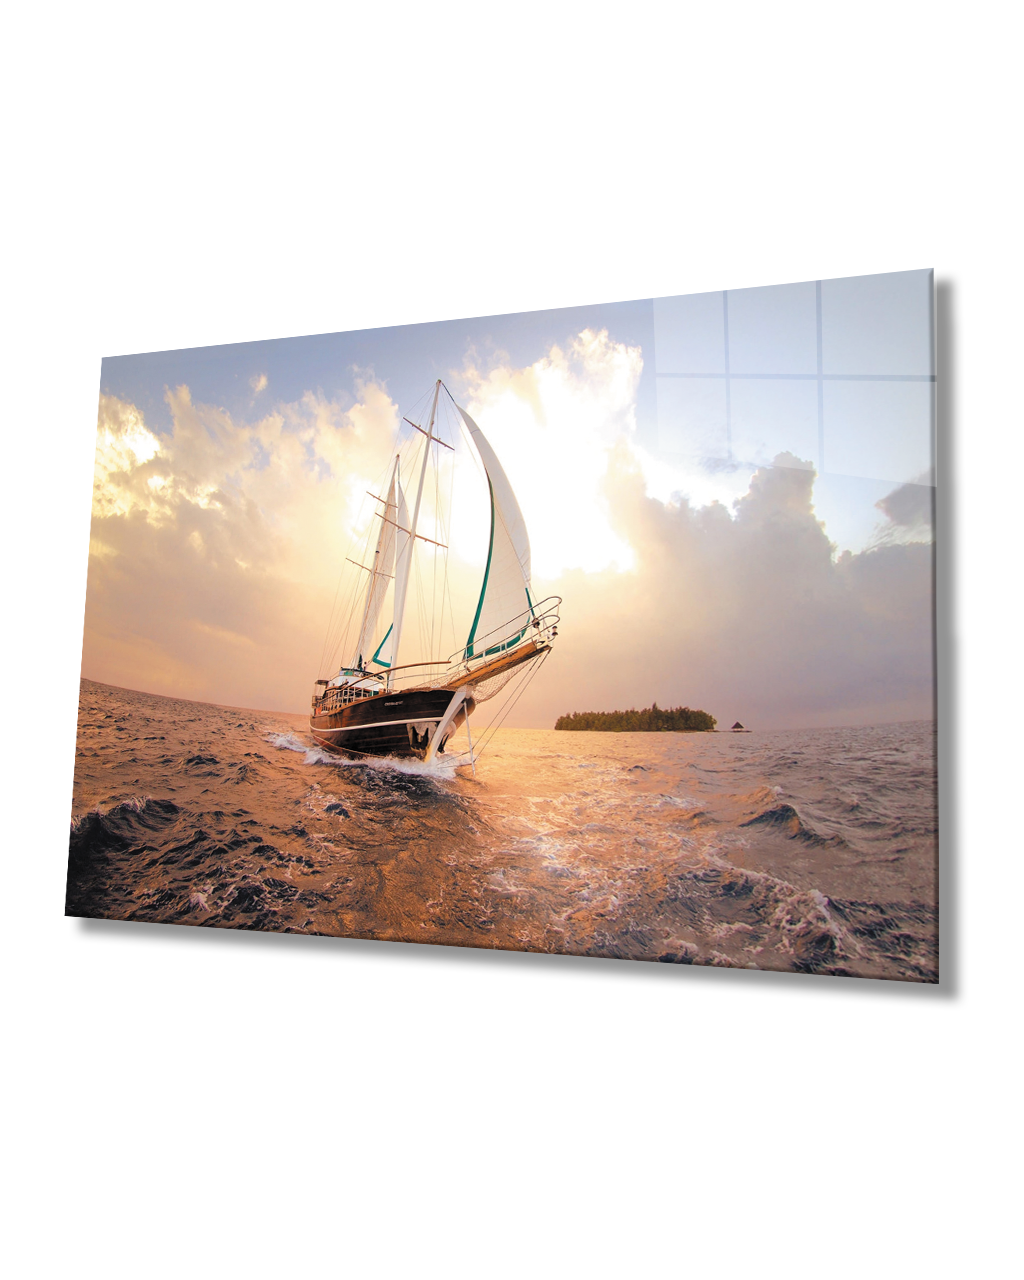 Gün Batımı Yelkenli Cam Tablo   4mm Dayanıklı Temperli Cam Sunset Sail Glass Table 4mm Durable Tempered Glass